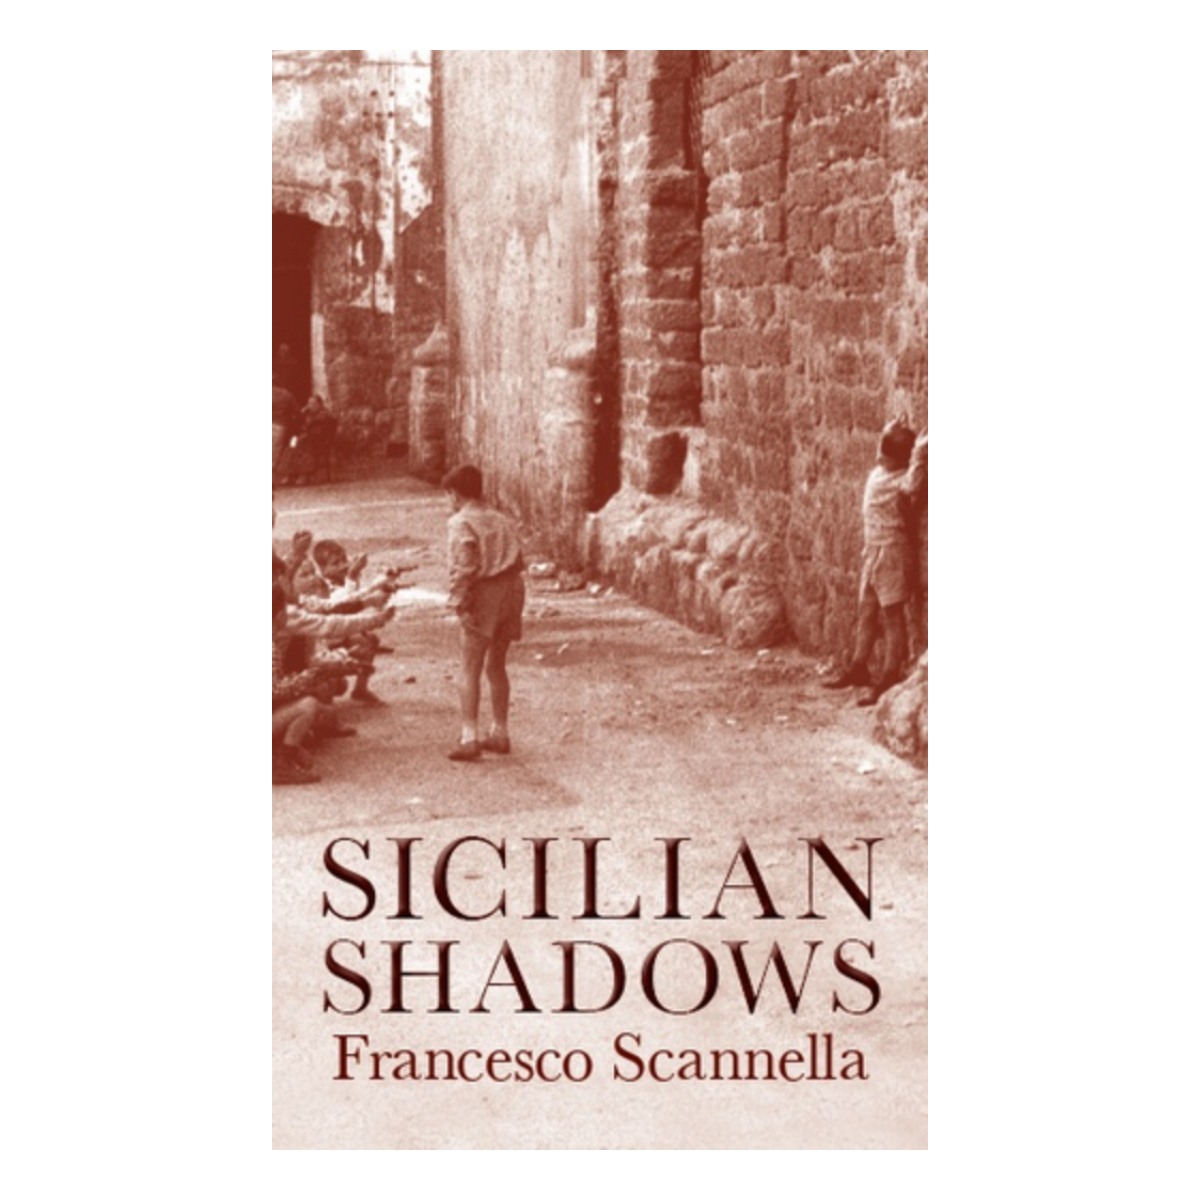 Sicilian Shadows